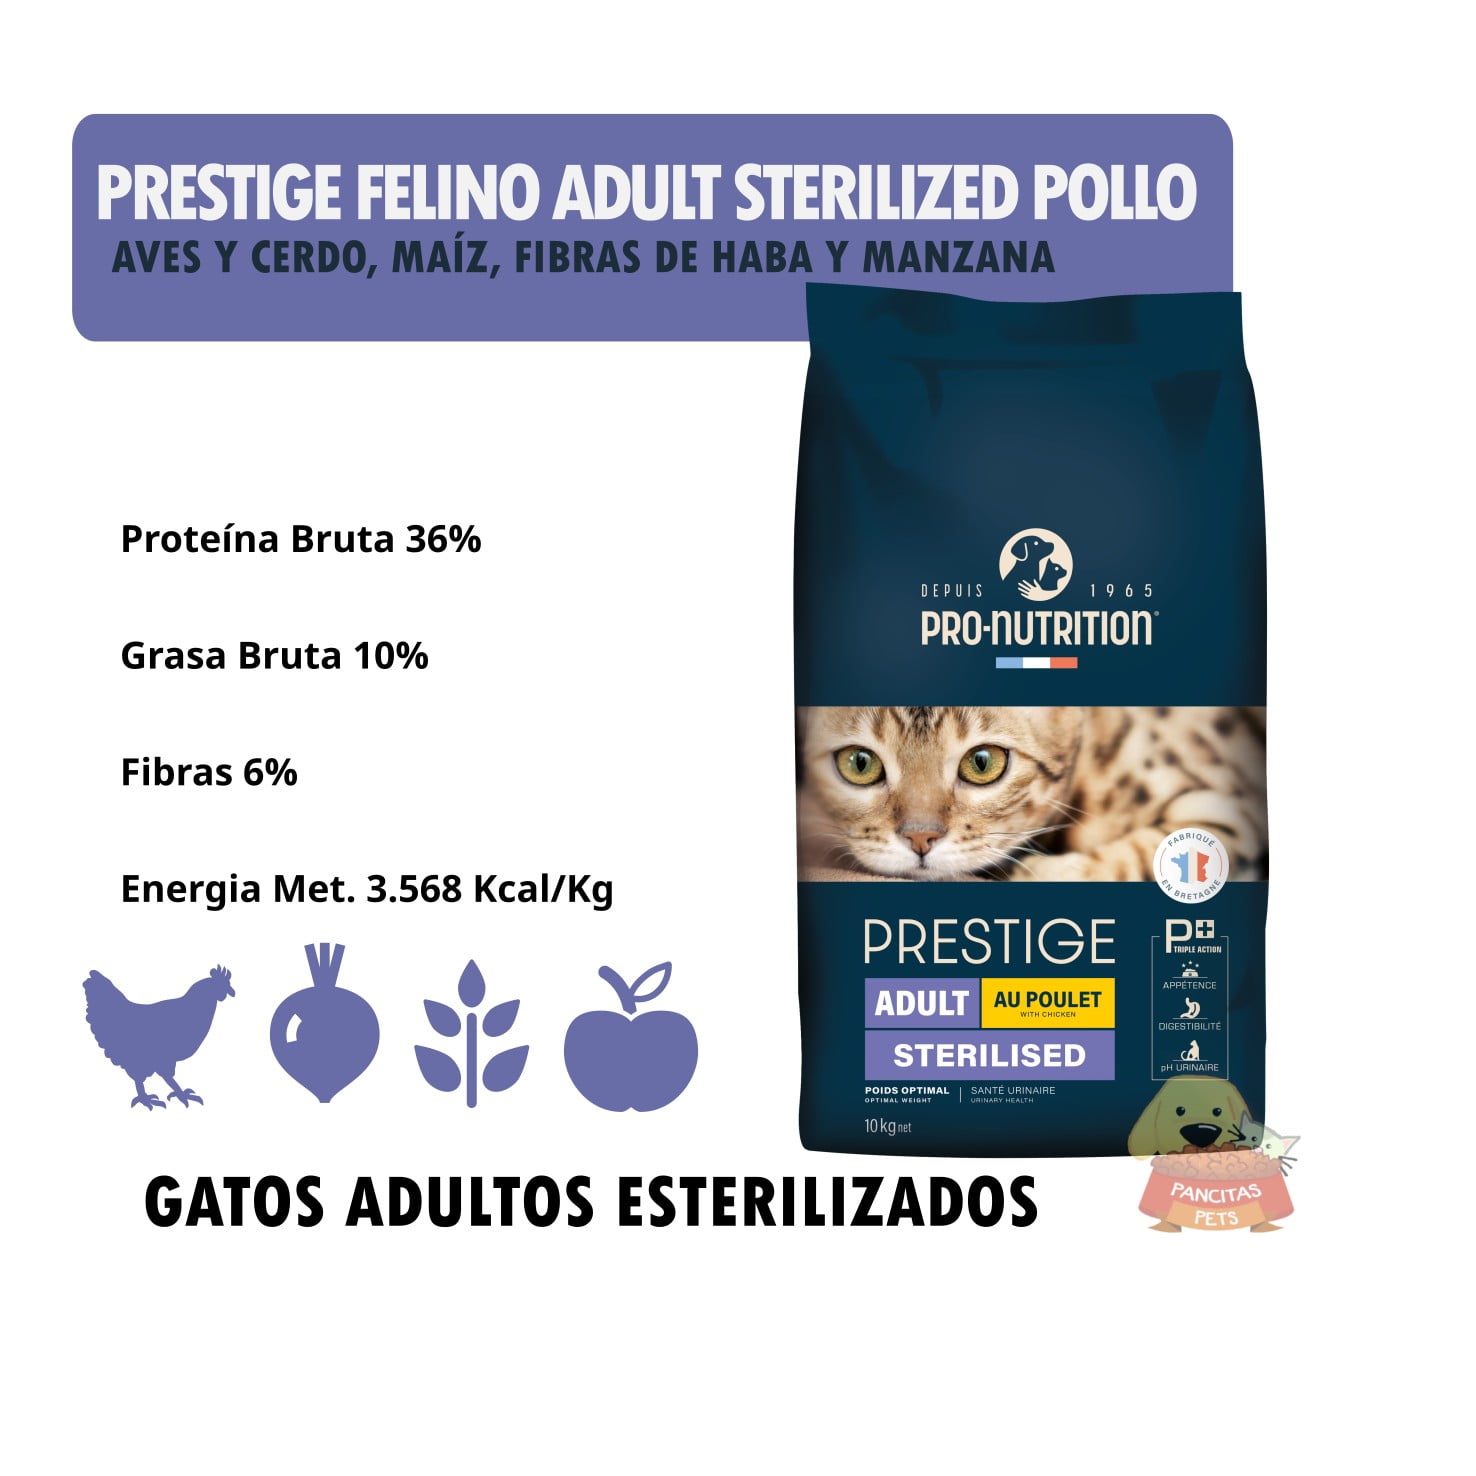 Prestige Felino Adult Sterilized Con Pollo Detalle